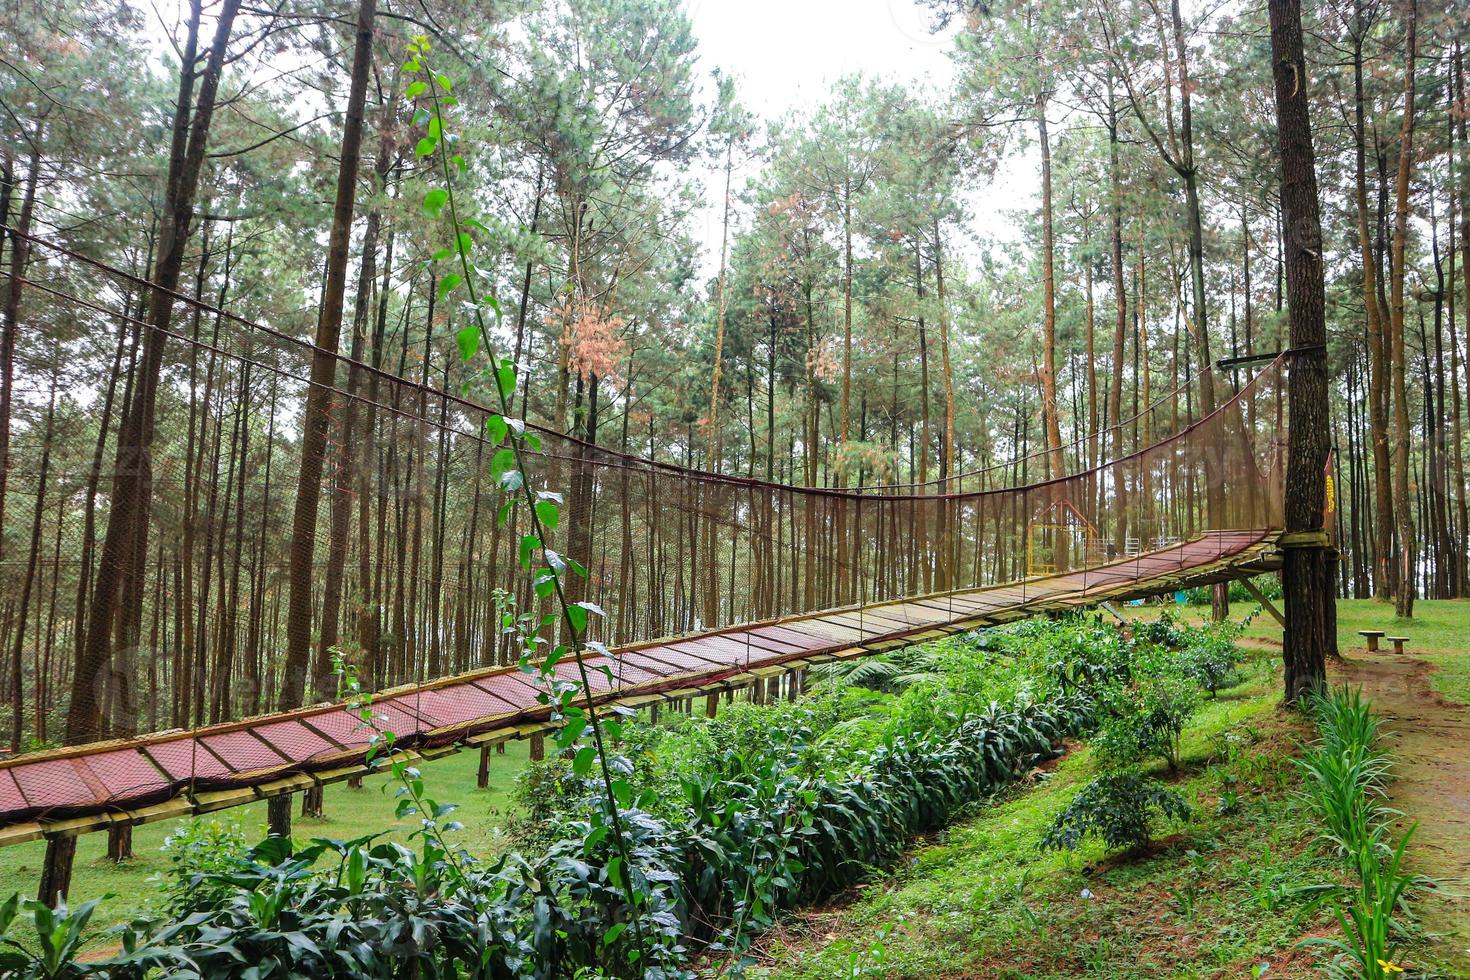 impressionante ponte de madeira no meio de uma floresta de pinheiros foto